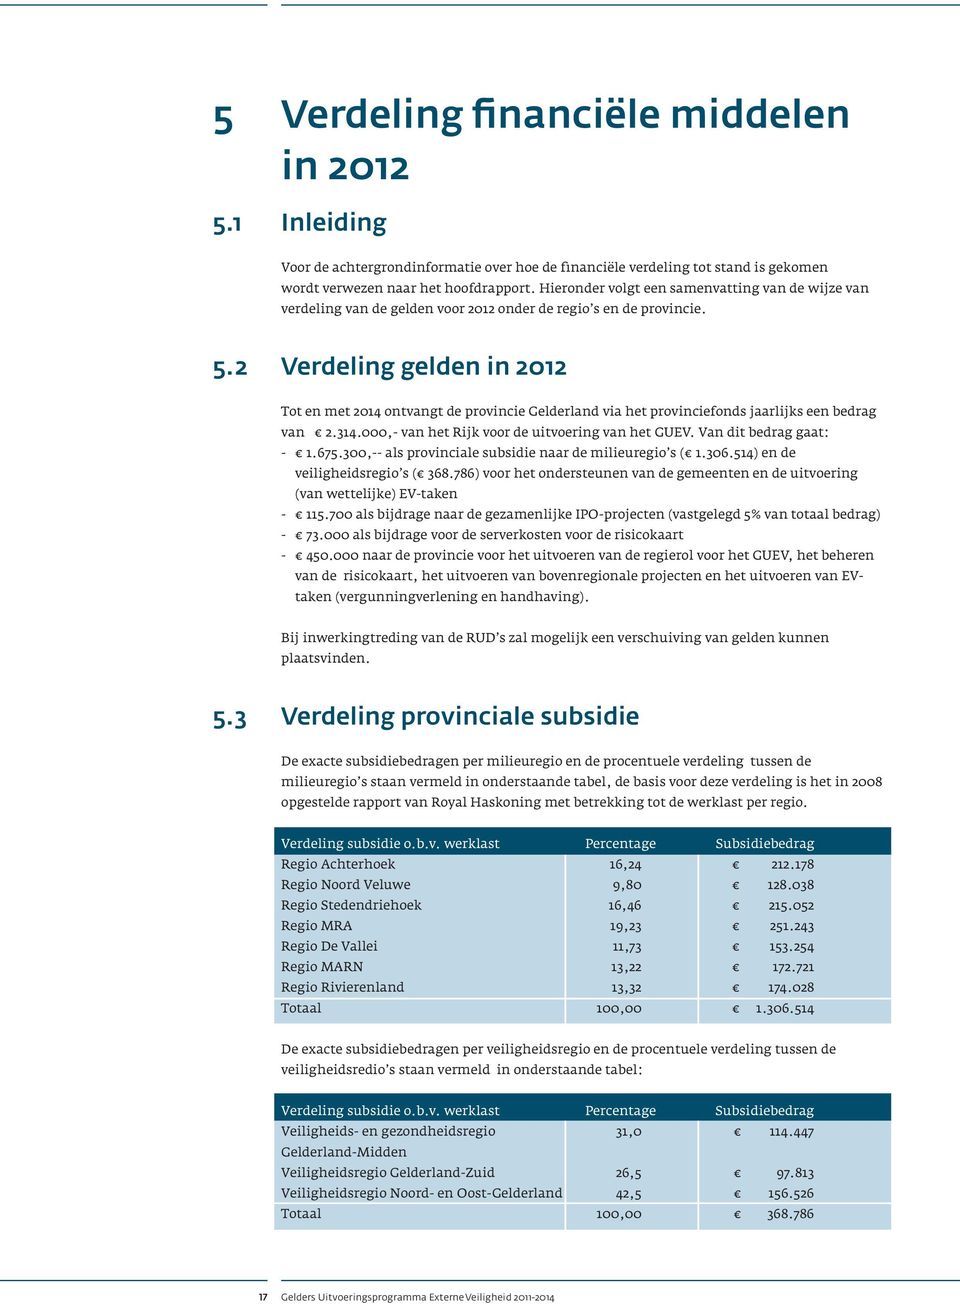 2 Verdeling gelden in 2012 Tot en met 2014 ontvangt de provincie Gelderland via het provinciefonds jaarlijks een bedrag van 2.314.000,- van het Rijk voor de uitvoering van het GU.